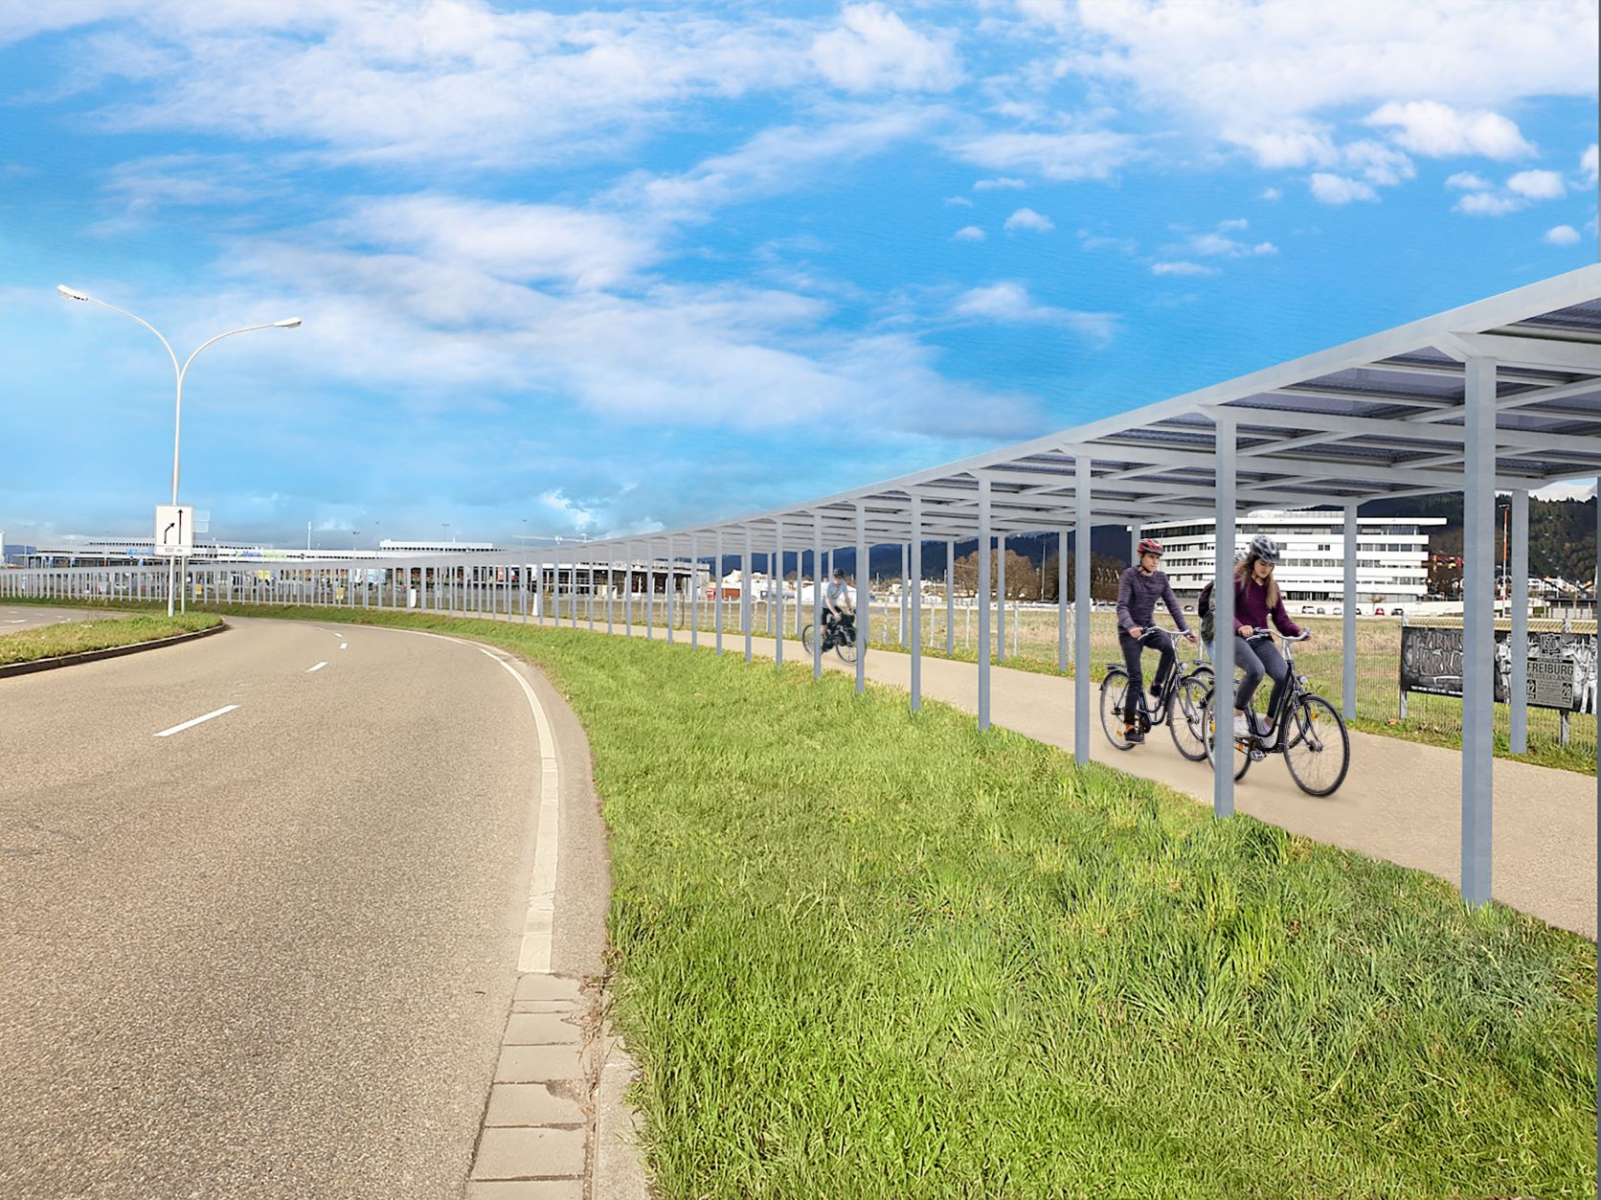 Vorangehen in Sachen Energiewende: Erste Solar-Radwegüberdachung entsteht in Freiburg